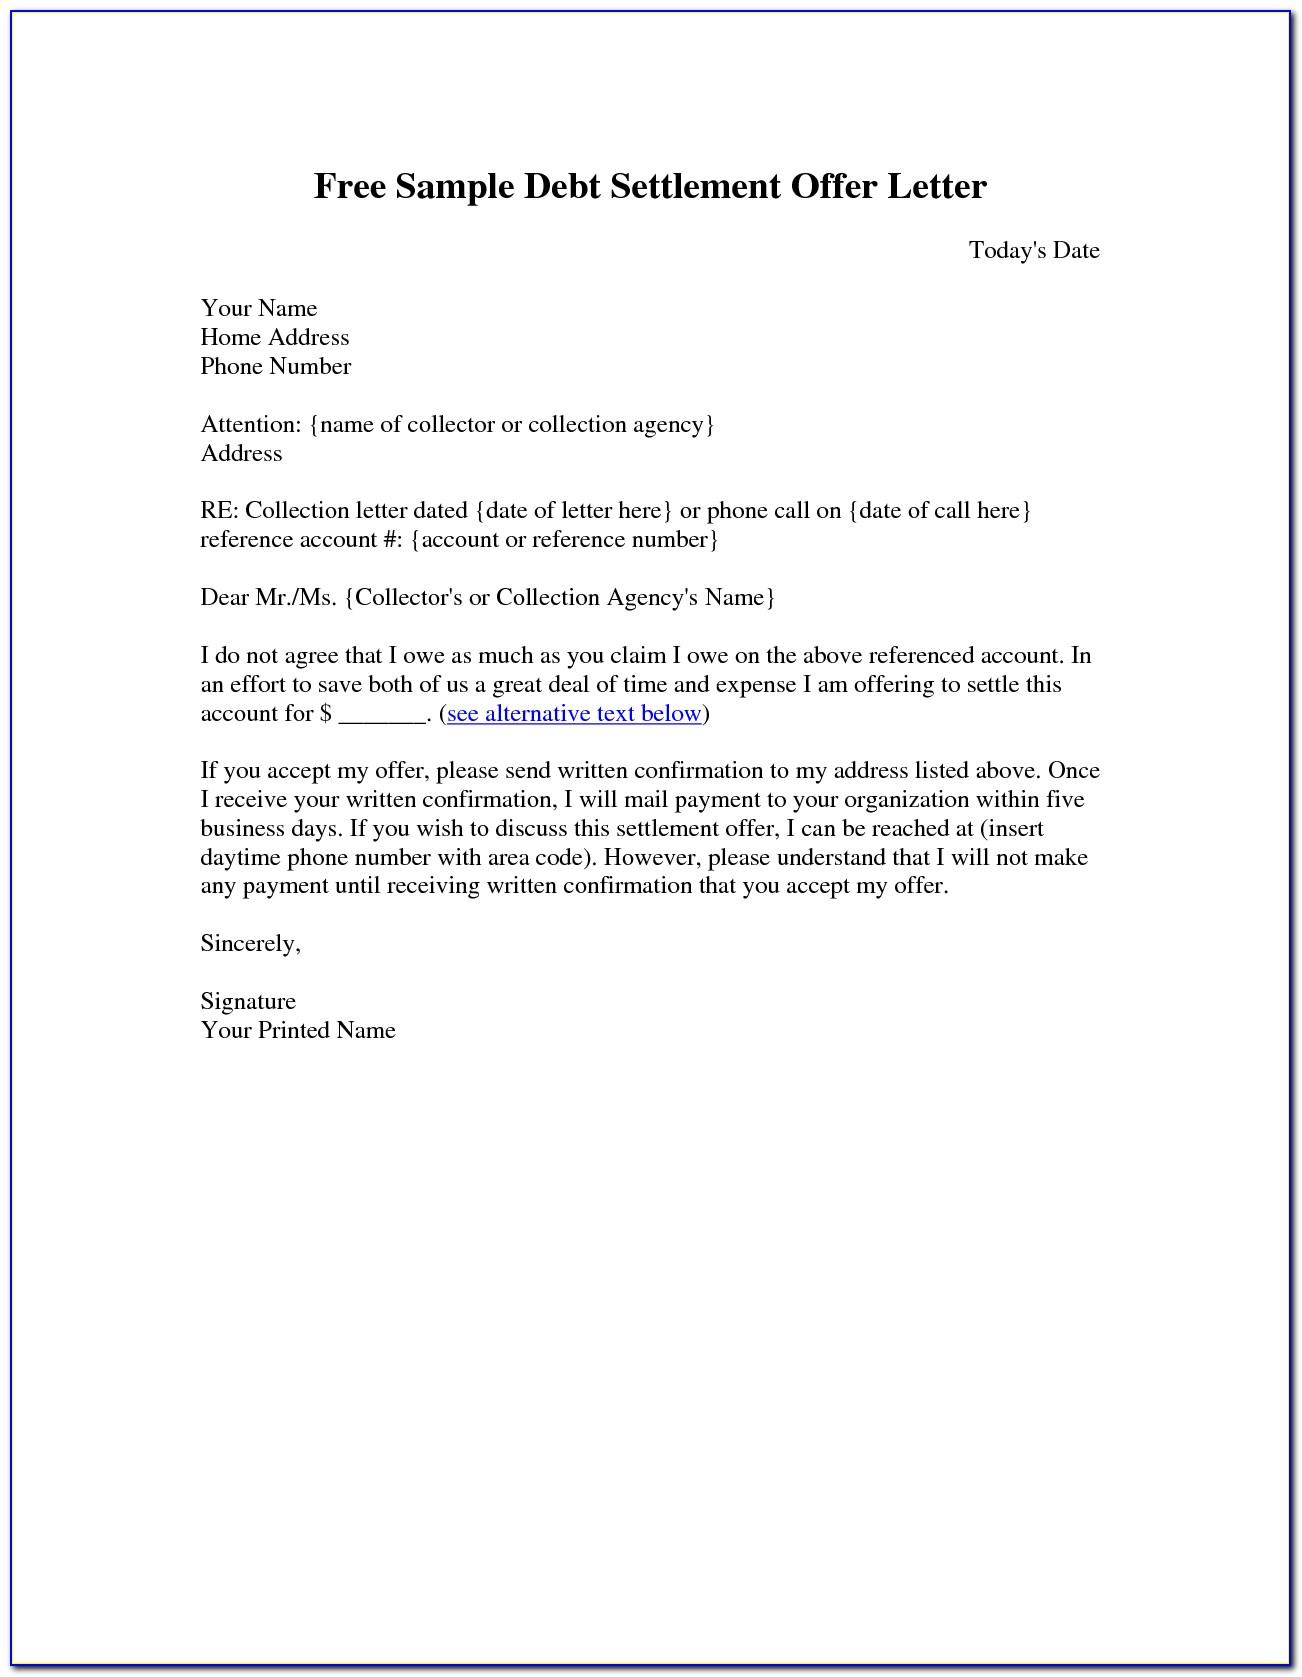 Settlement Offer Letter Template